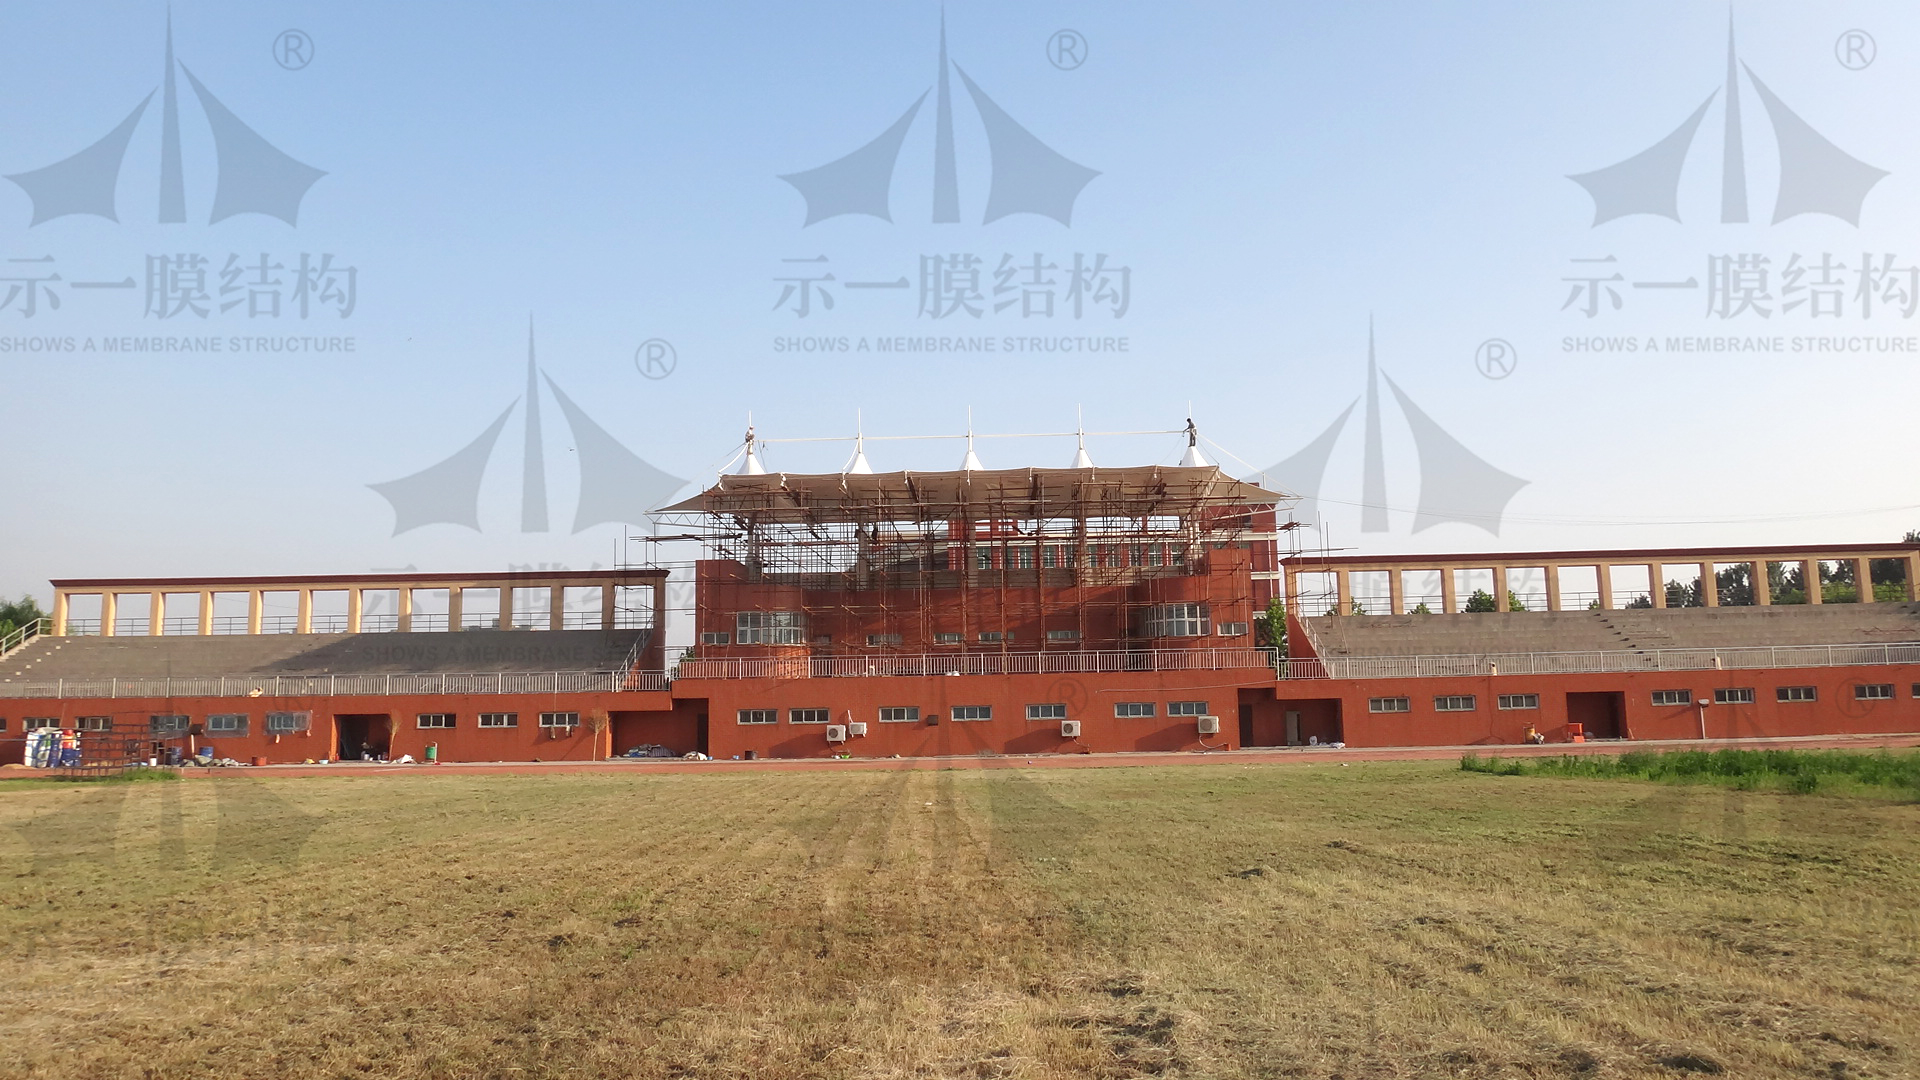 上海示一膜结构有限公司河南华信学院膜结构体育看台